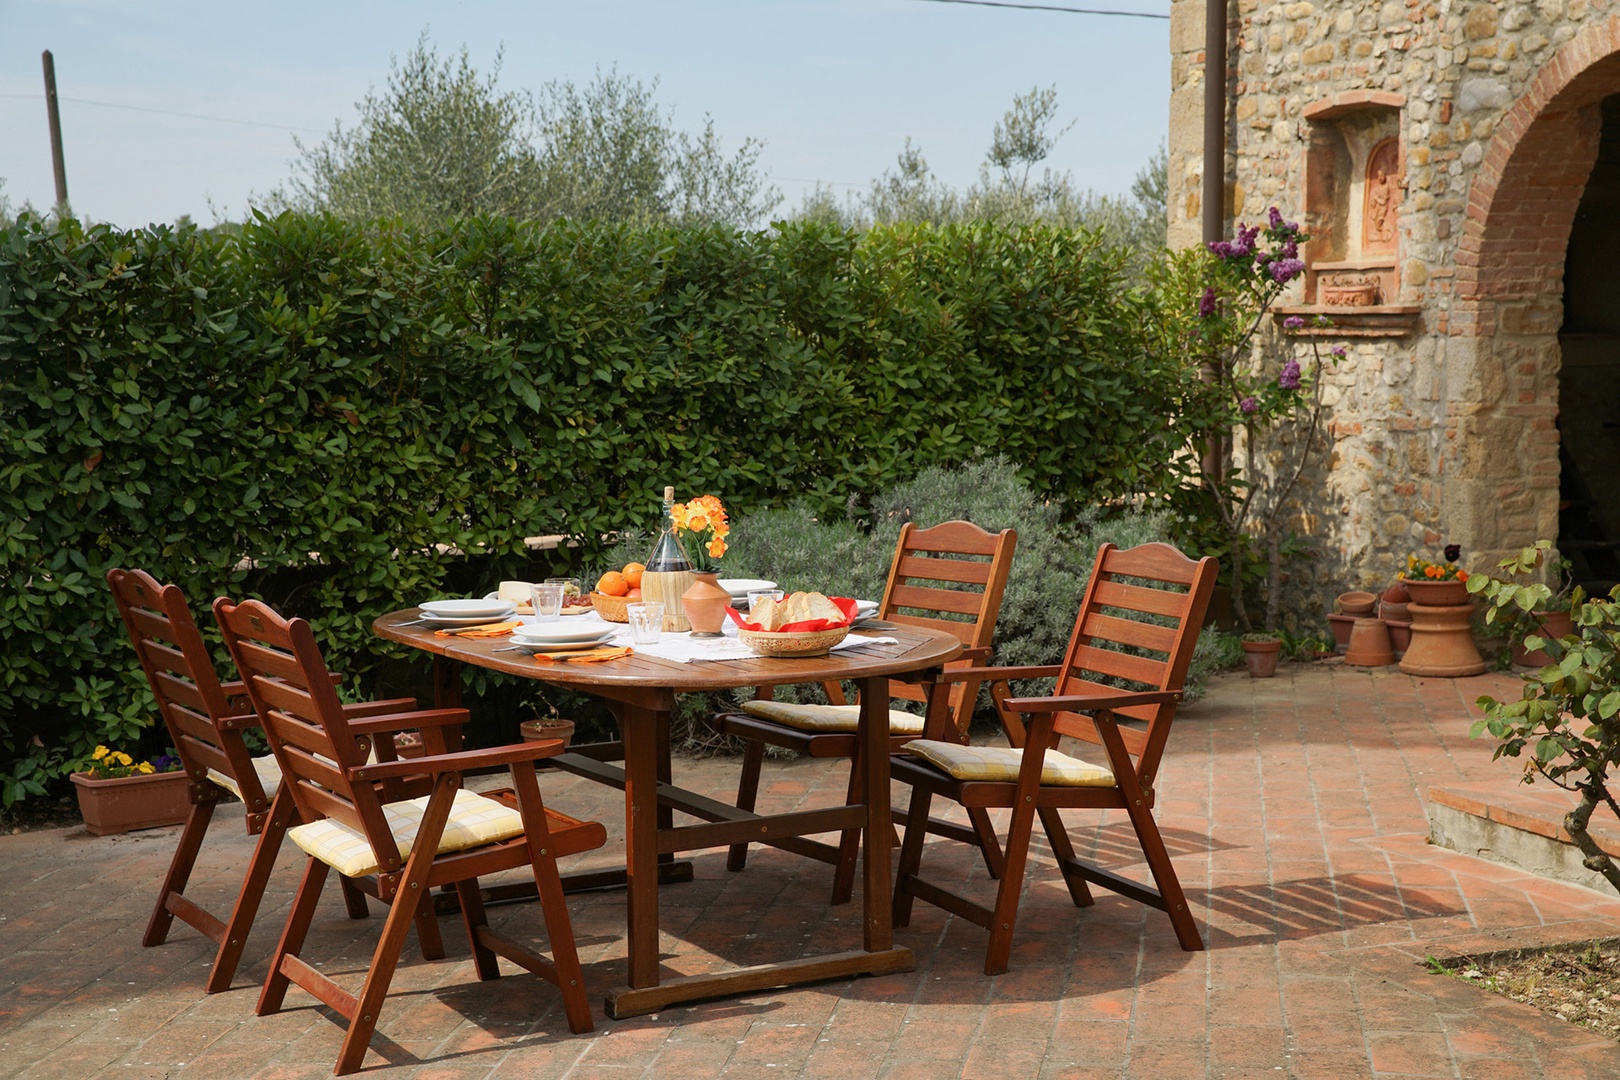 Enjoy meals al fresco on the sunny terrace at Casa San Vito.